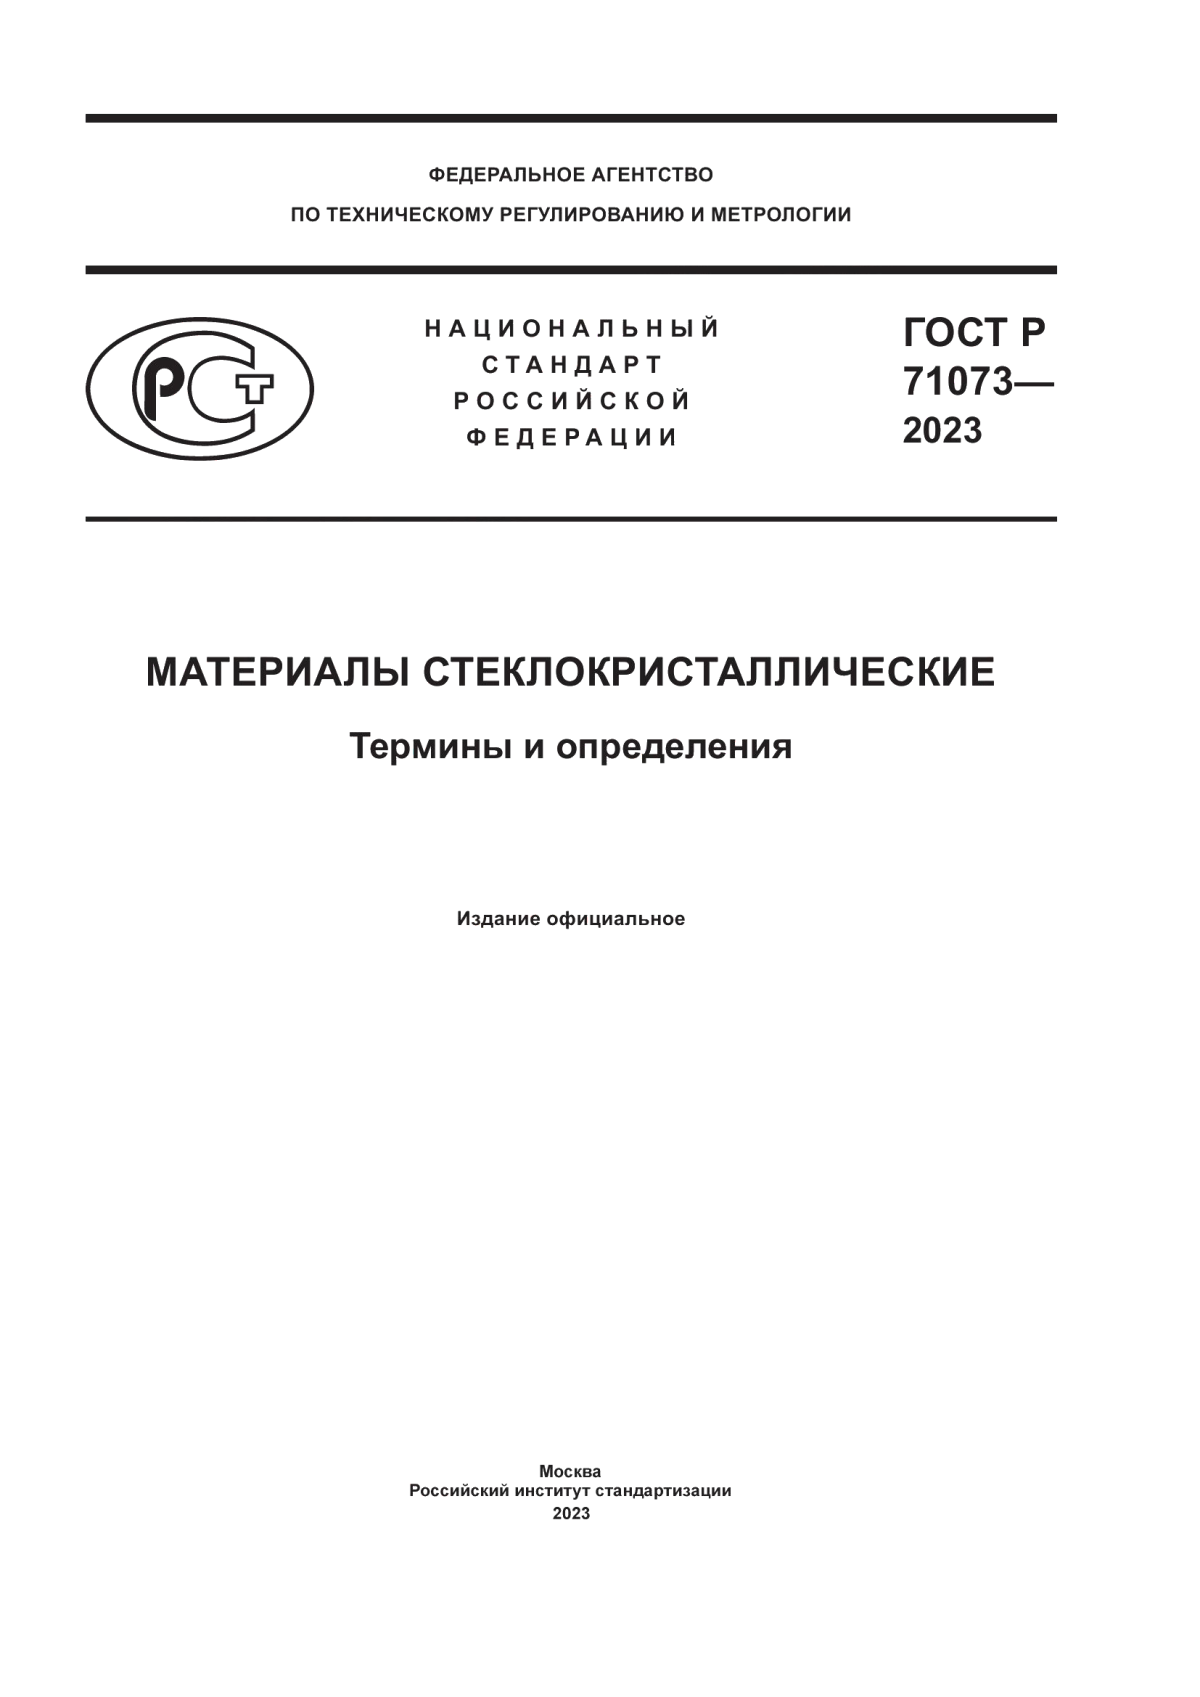 ГОСТ Р 71073-2023 Материалы стеклокристаллические. Термины и определения